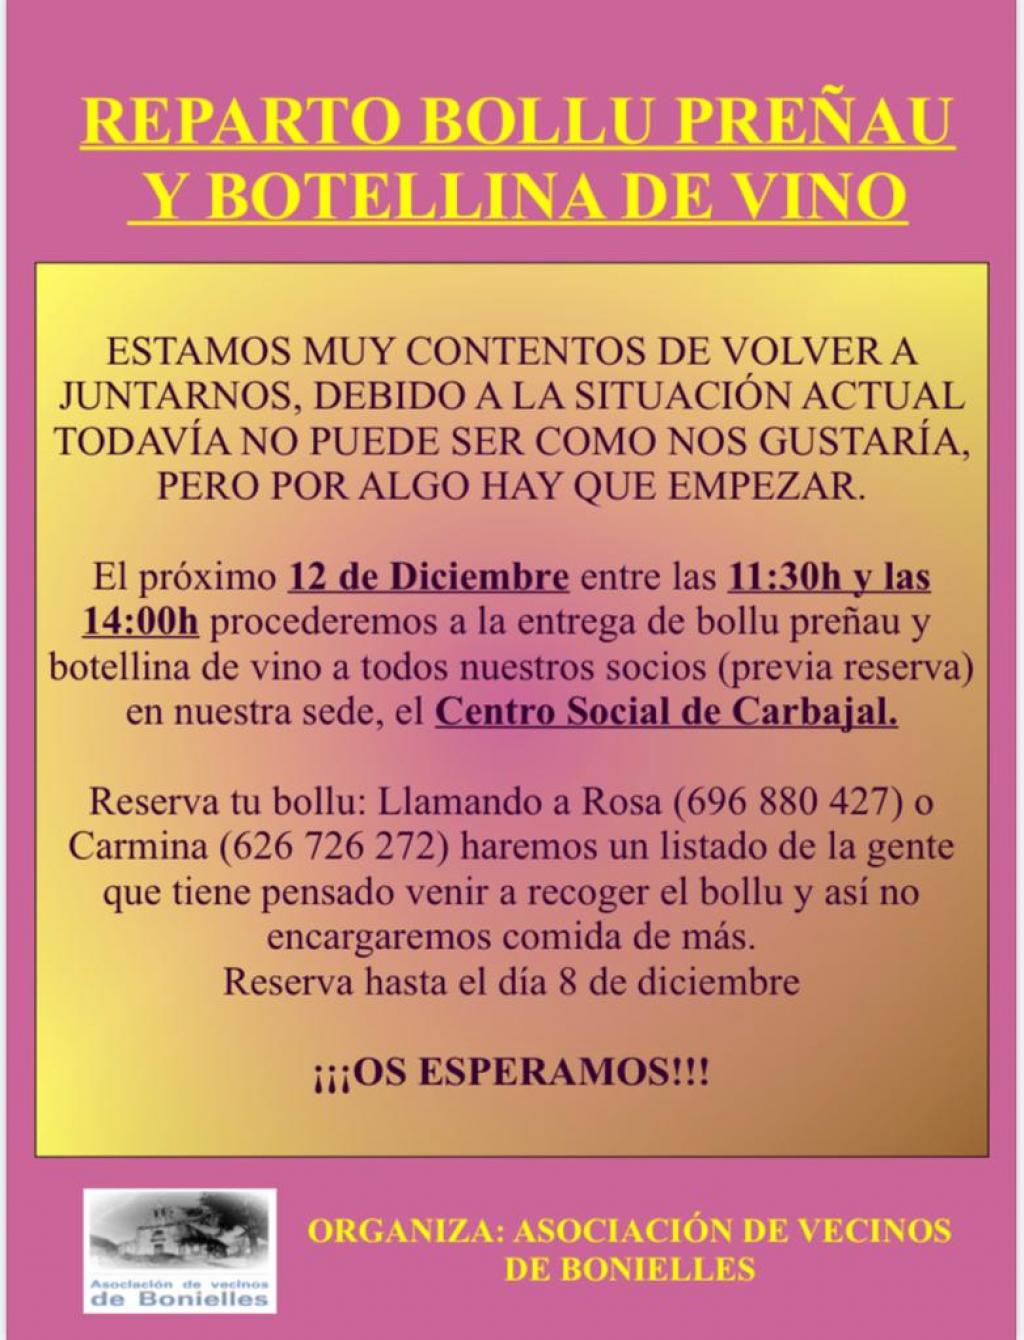 El Tapin - La Asociación de Vecinos de Bonielles repartirá el bollo preñáu y la botellina de vino entre los socios el 12 de diciembre